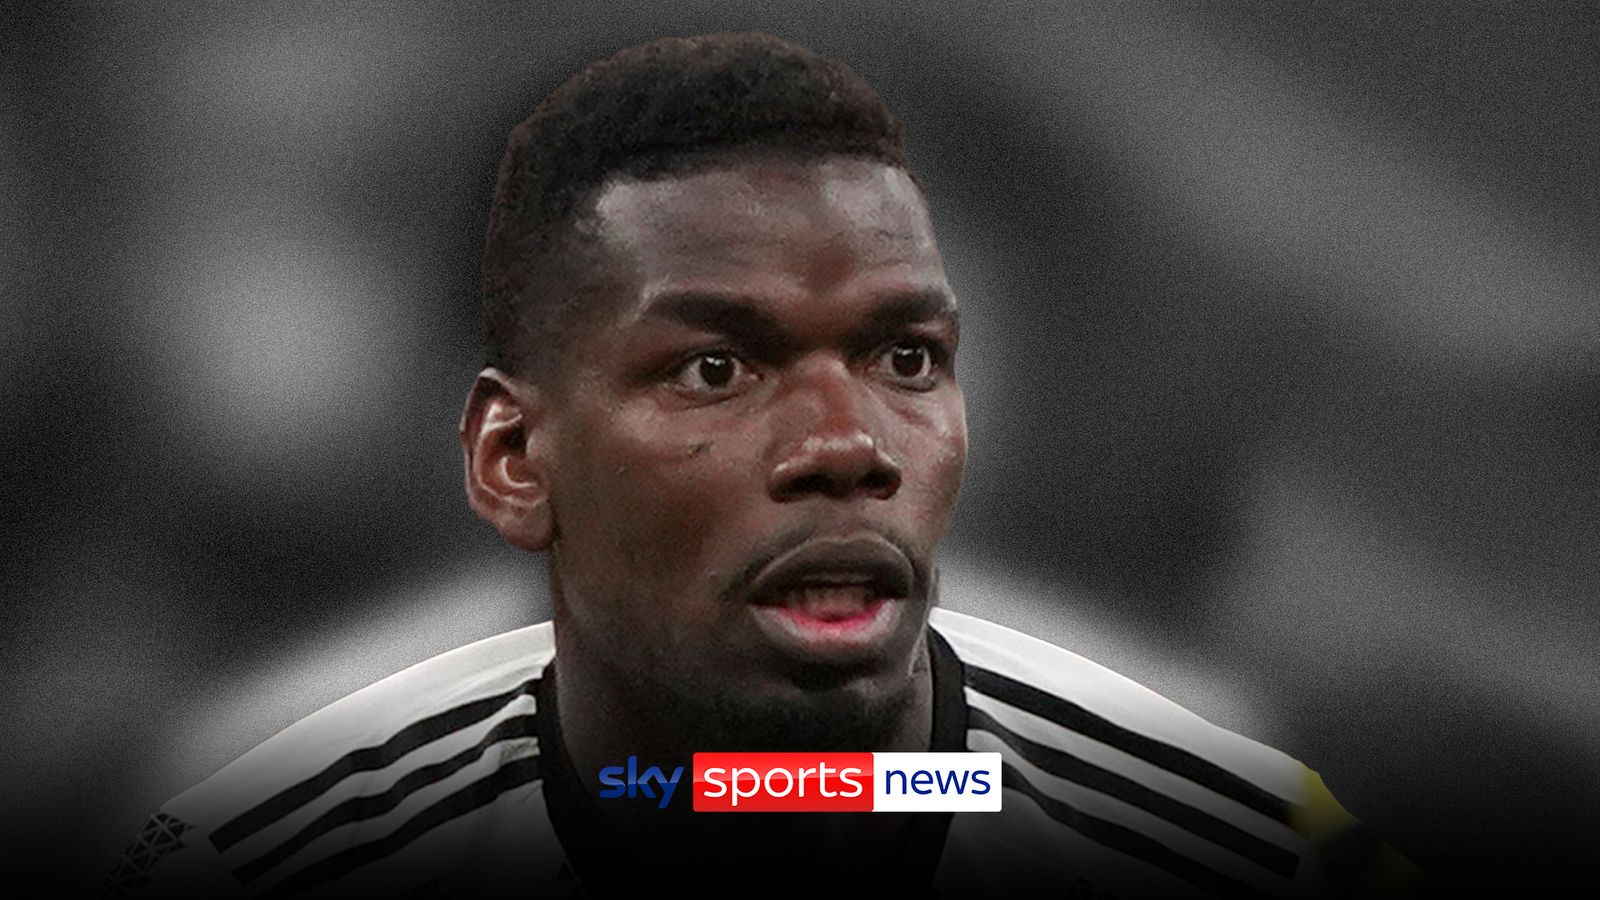 Paul Pogba Soru-Cevap: Juventus ve Manchester United'ın eski orta saha oyuncusunun dört yıllık doping yasağı sonrasında seçenekleri neler?  |  futbol haberleri